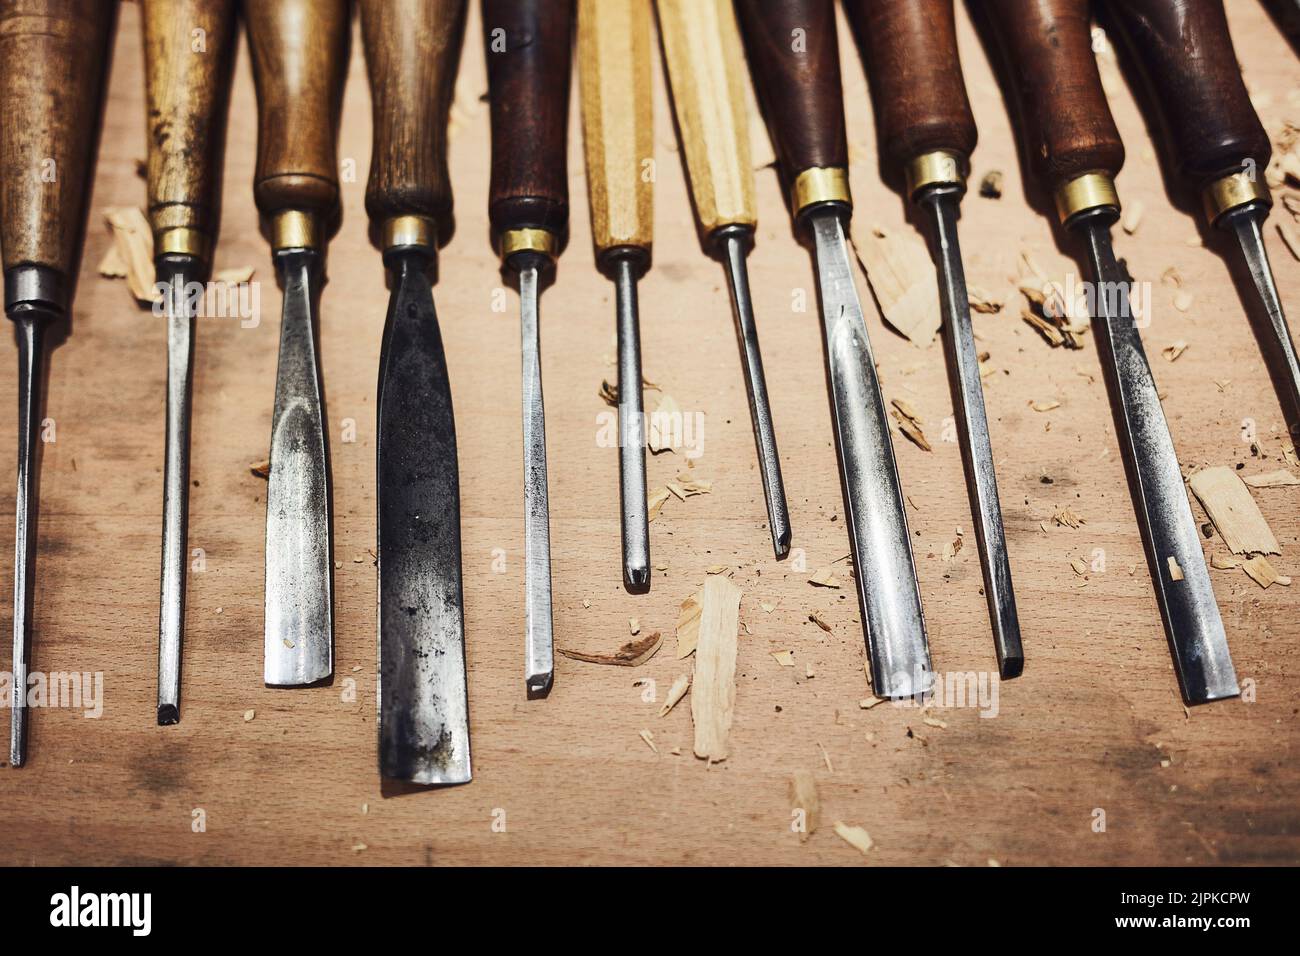 Haben Sie Werkzeuge. Wird schnitzen. Das Innere einer Werkstatt von Kunsthandwerkern. Stockfoto